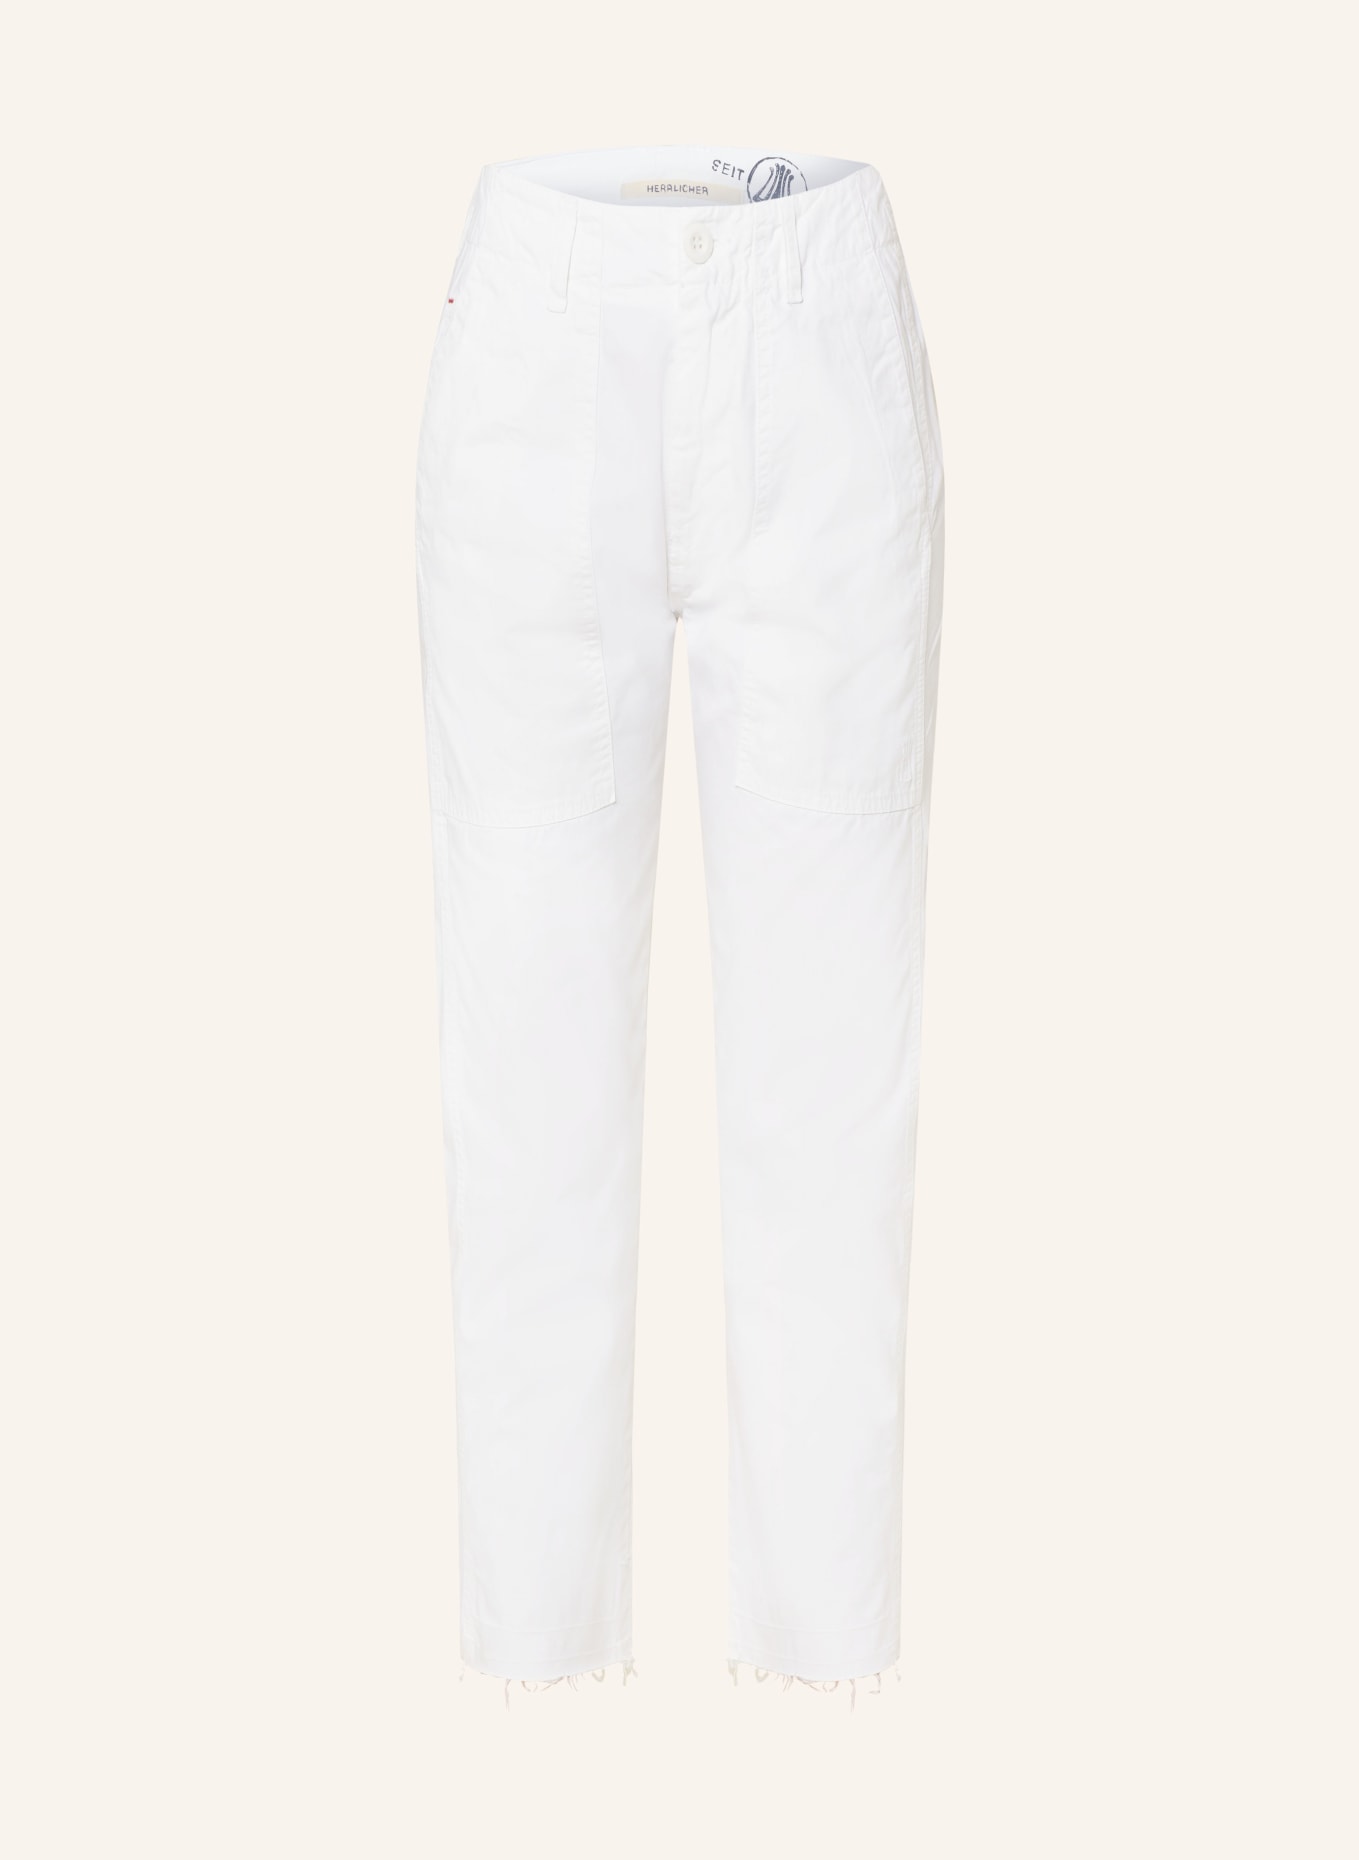 Herrlicher 7/8 trousers FATIQUE, Color: WHITE (Image 1)